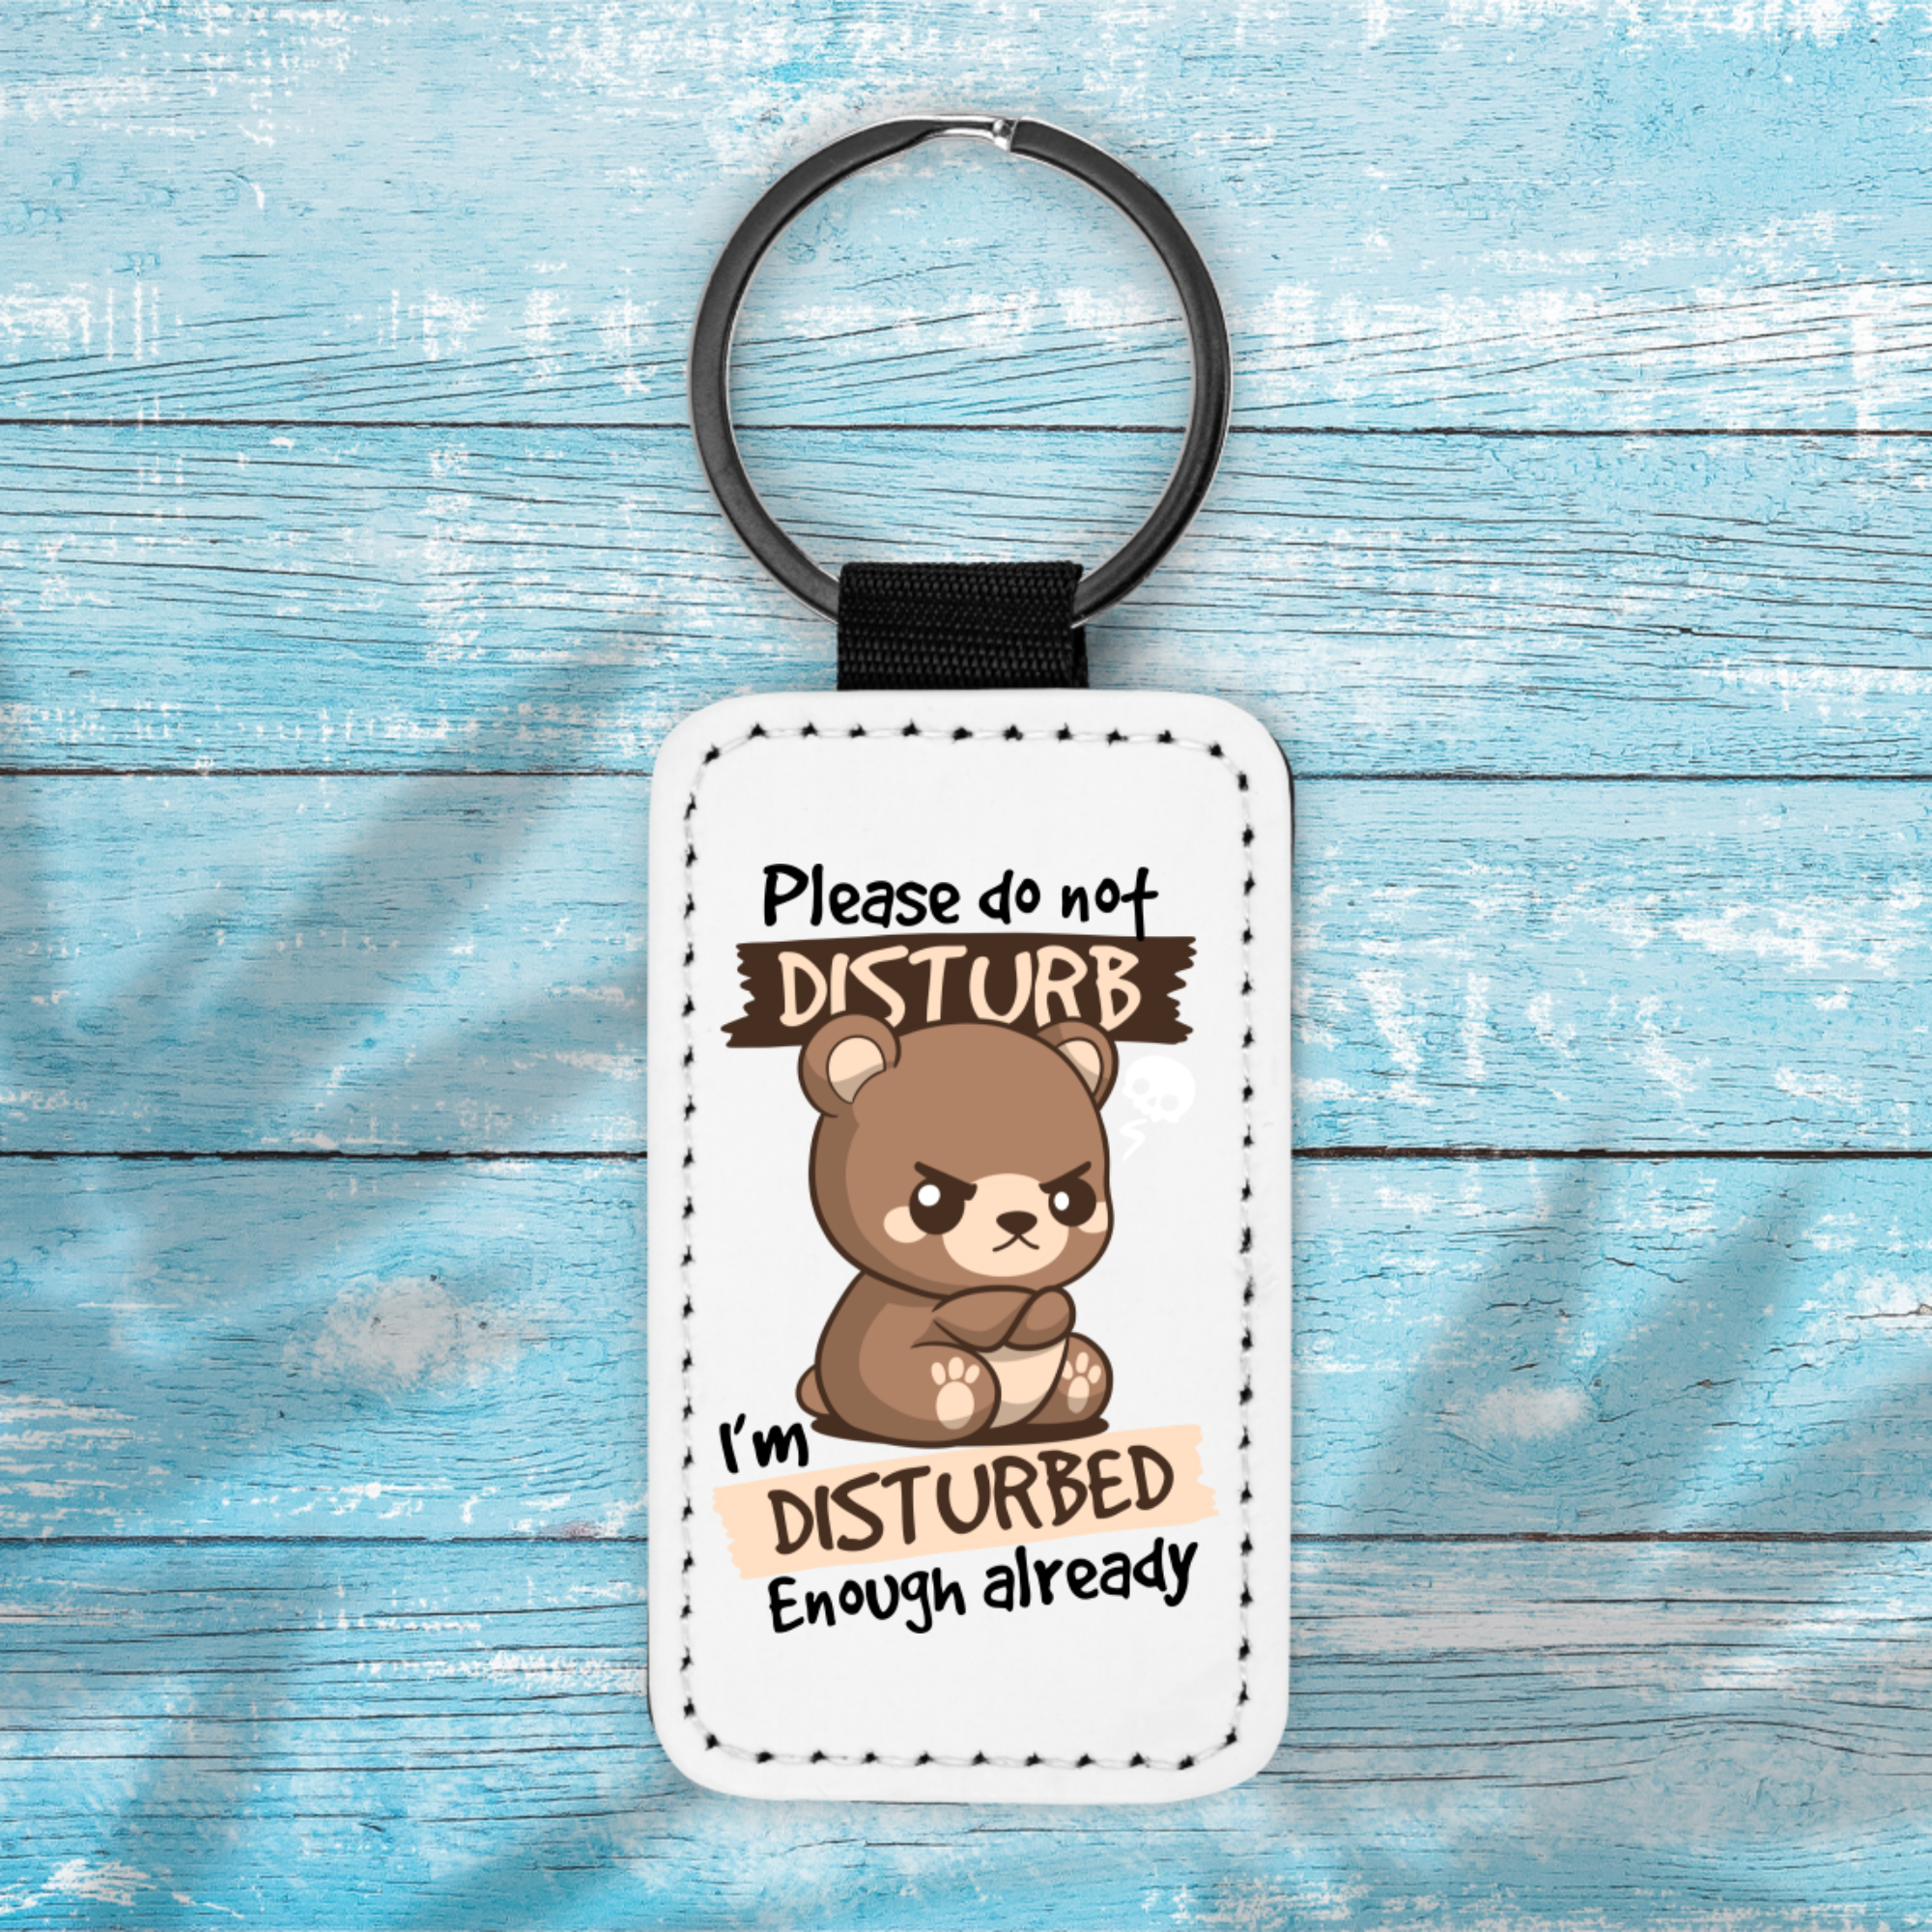 Disturbed Bear - Key Chain